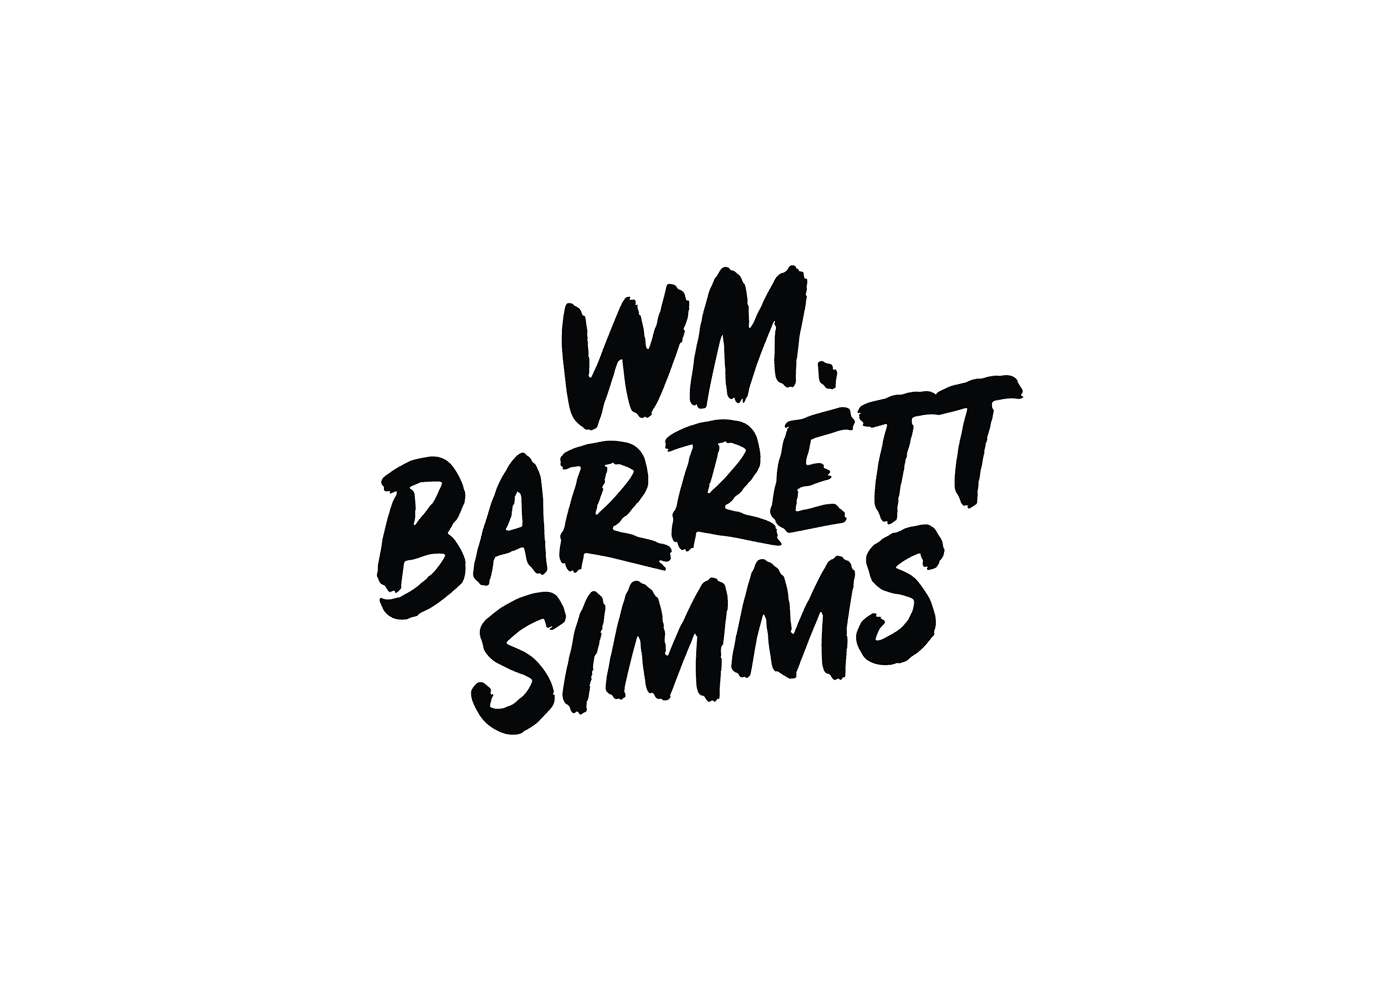 Wm. Barrett Simms